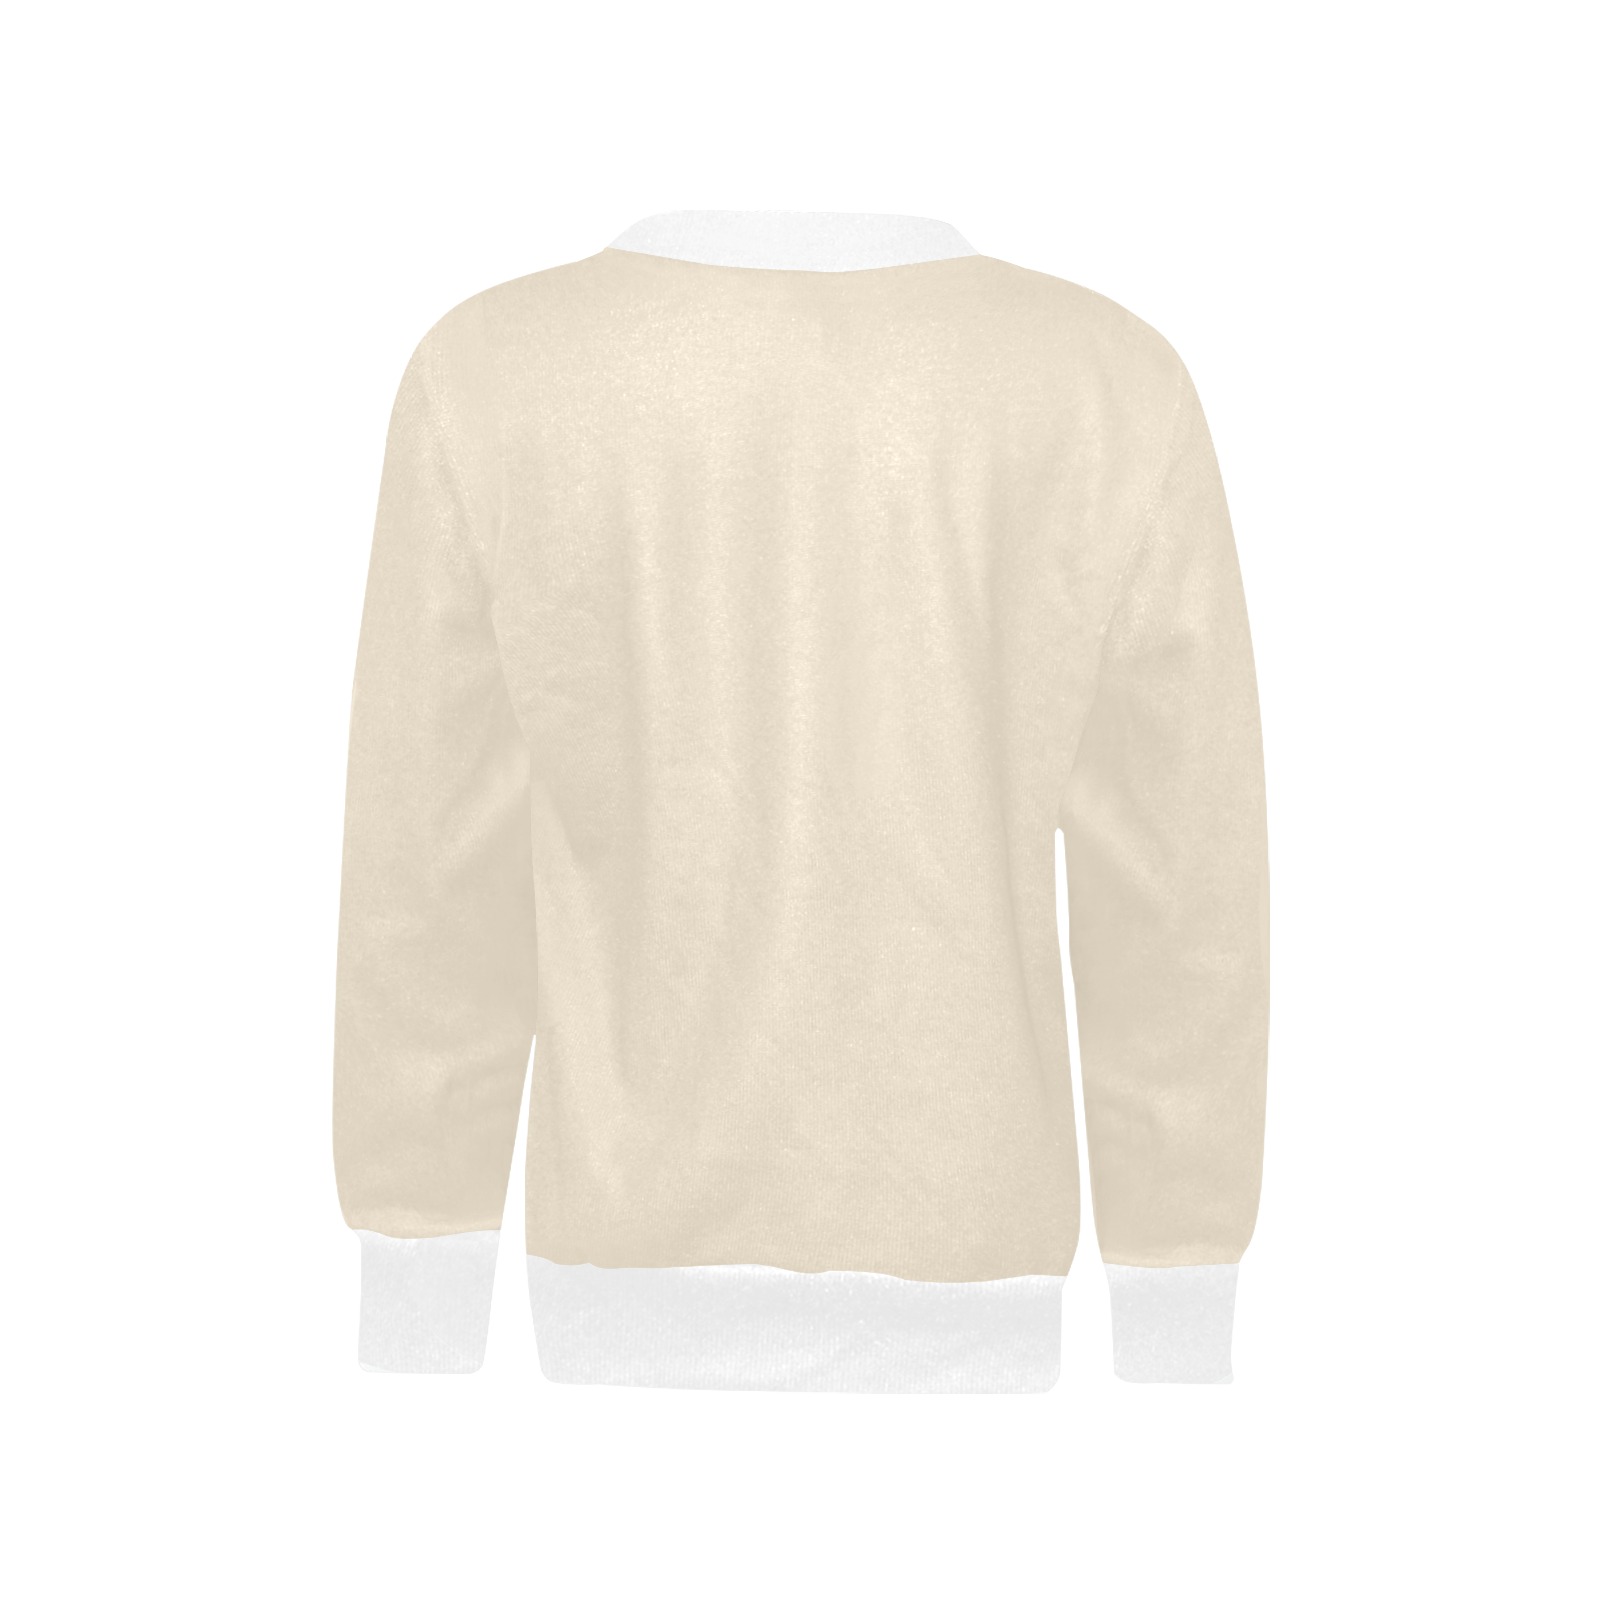 Buttercream Girls' All Over Print Crew Neck Sweater (Model H49)